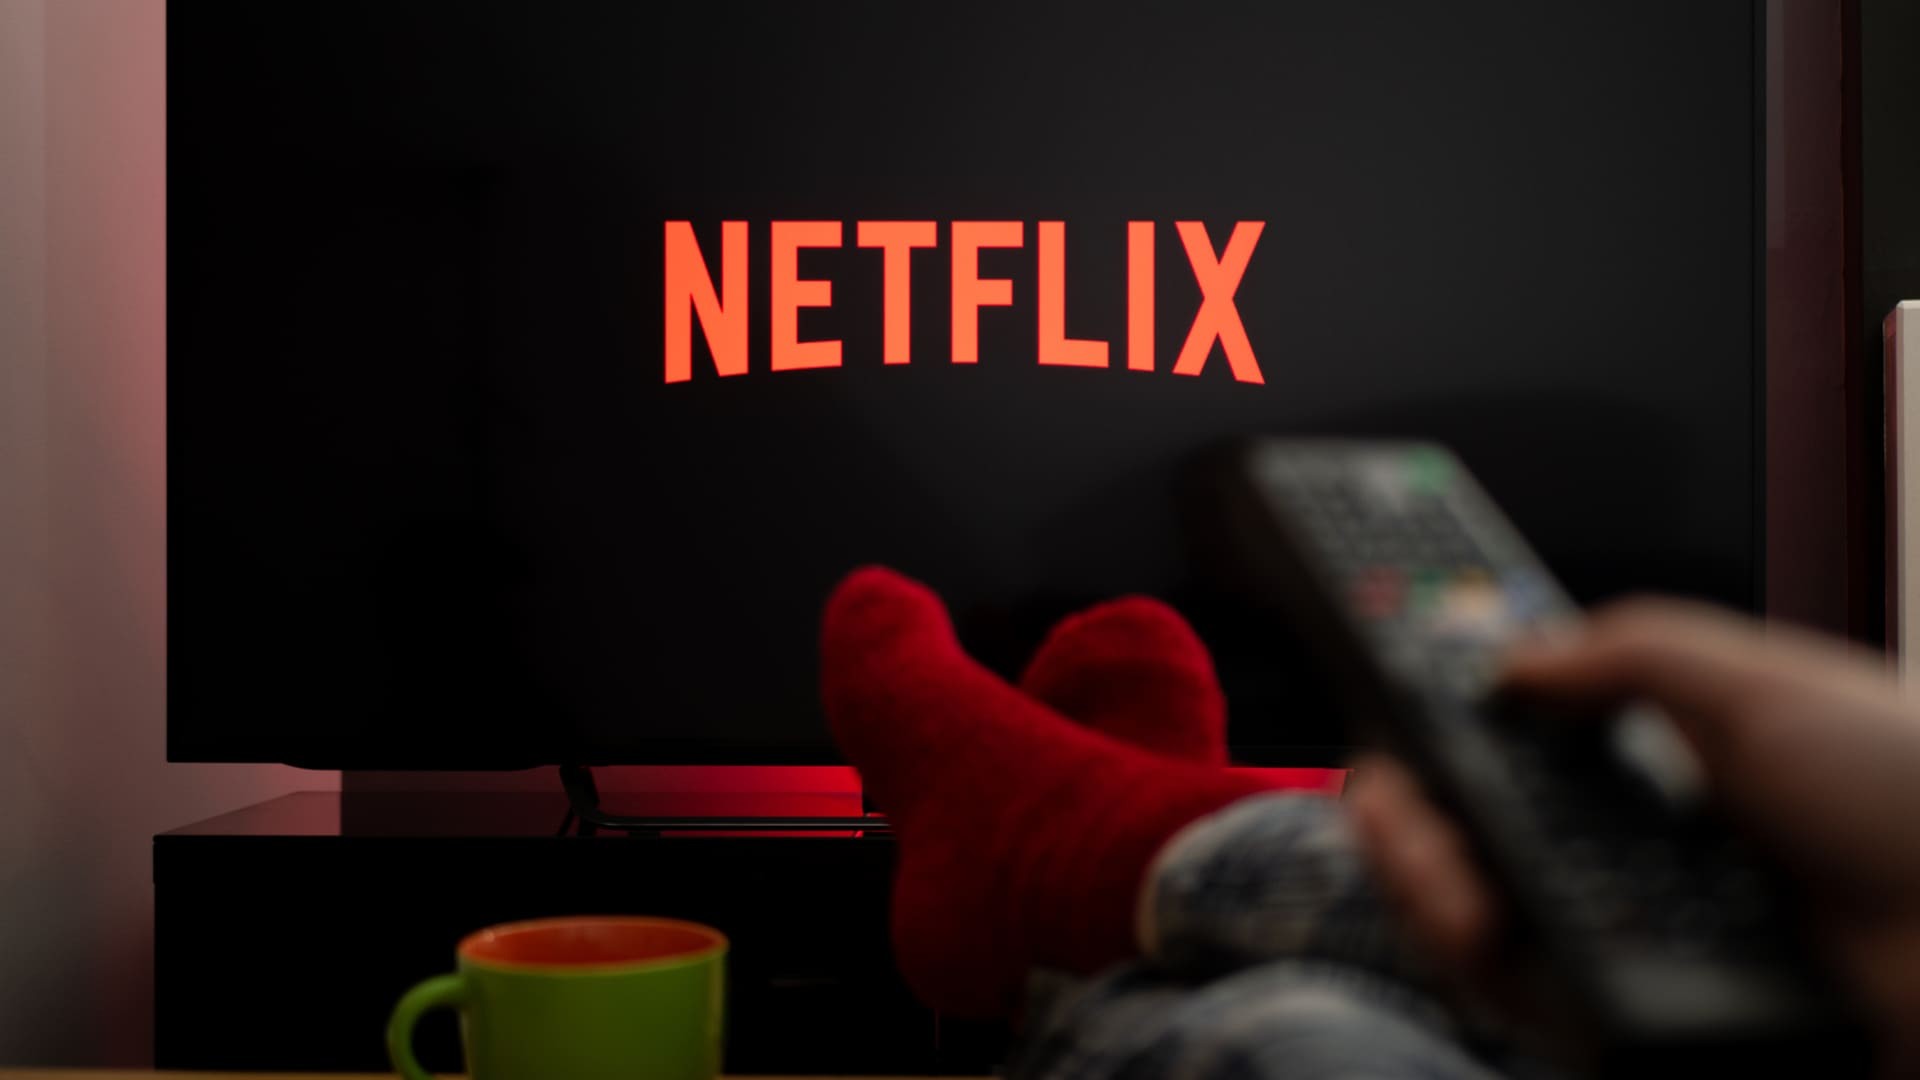 Netflix descarta lançamento de plano gratuito com anúncios no Brasil -  TudoCelular.com